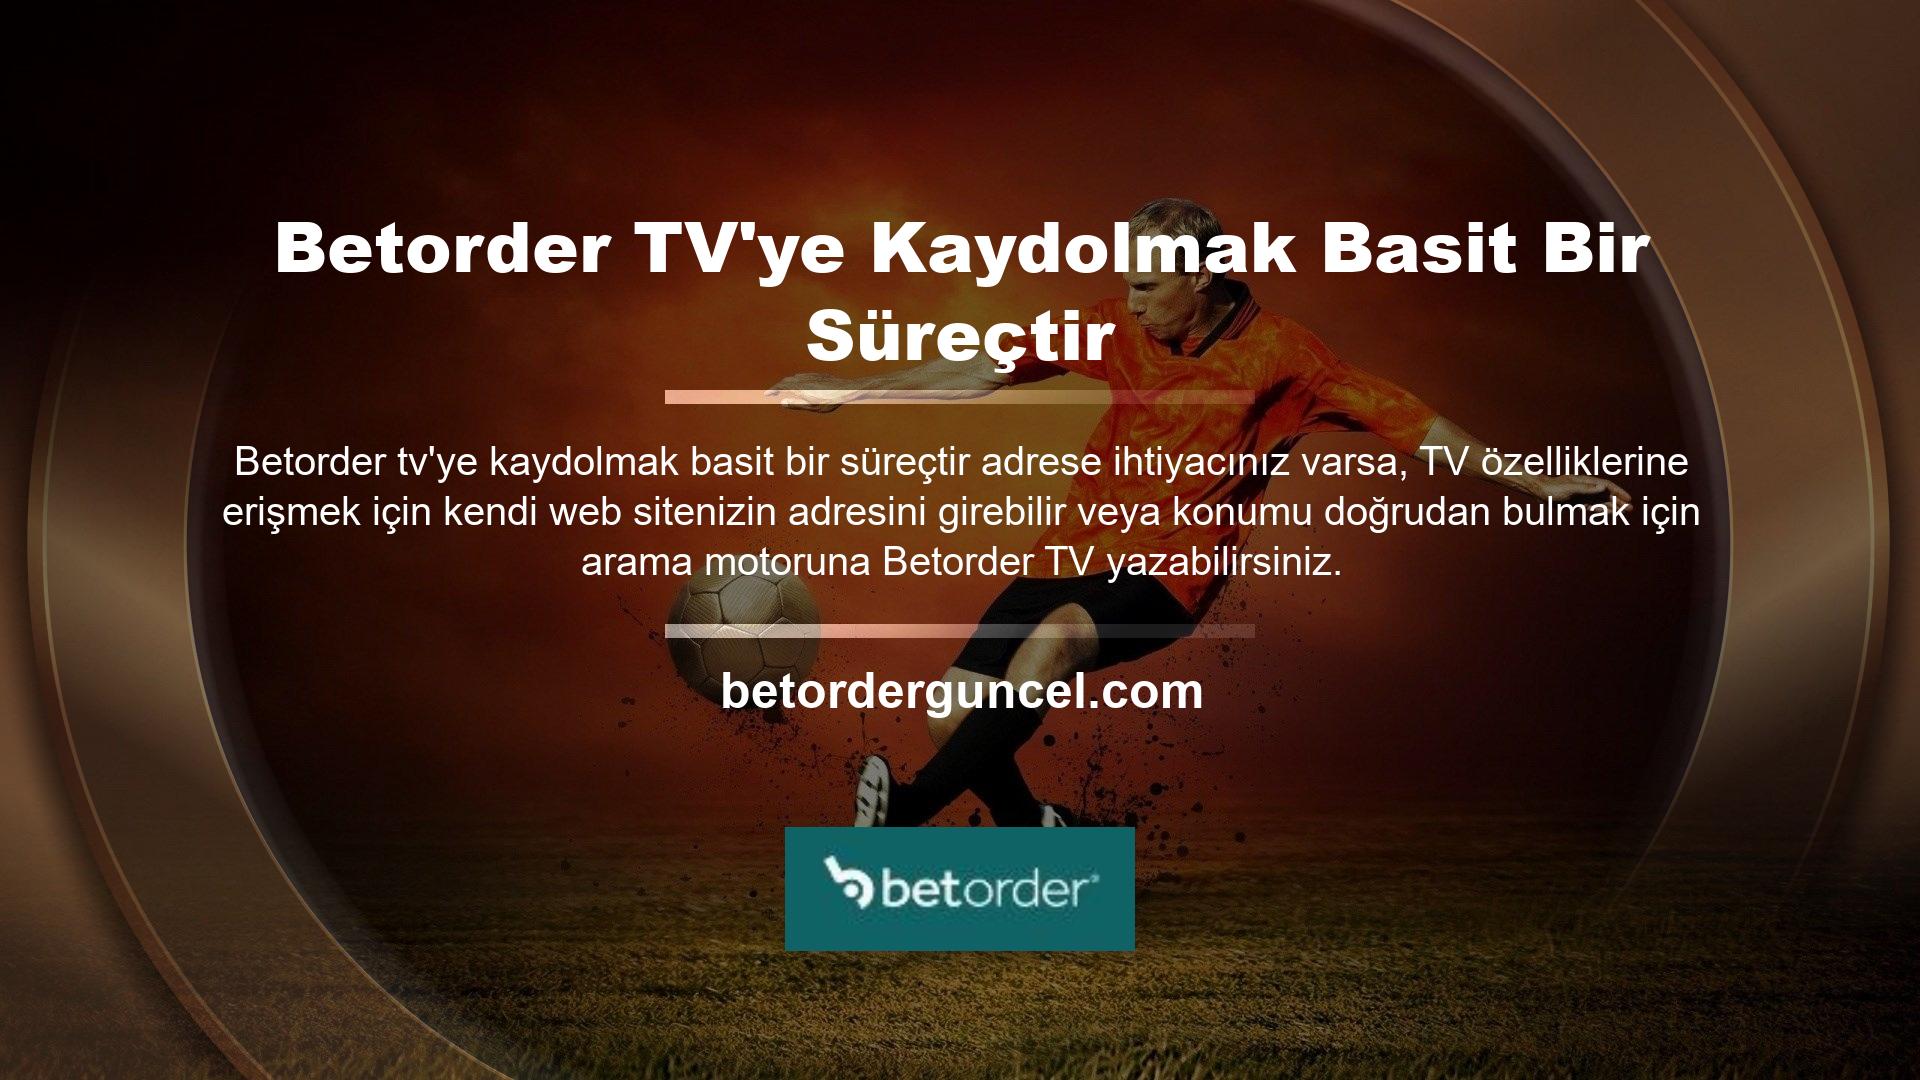 Betorder TV tüm spor dallarının canlı yayınını sunuyor